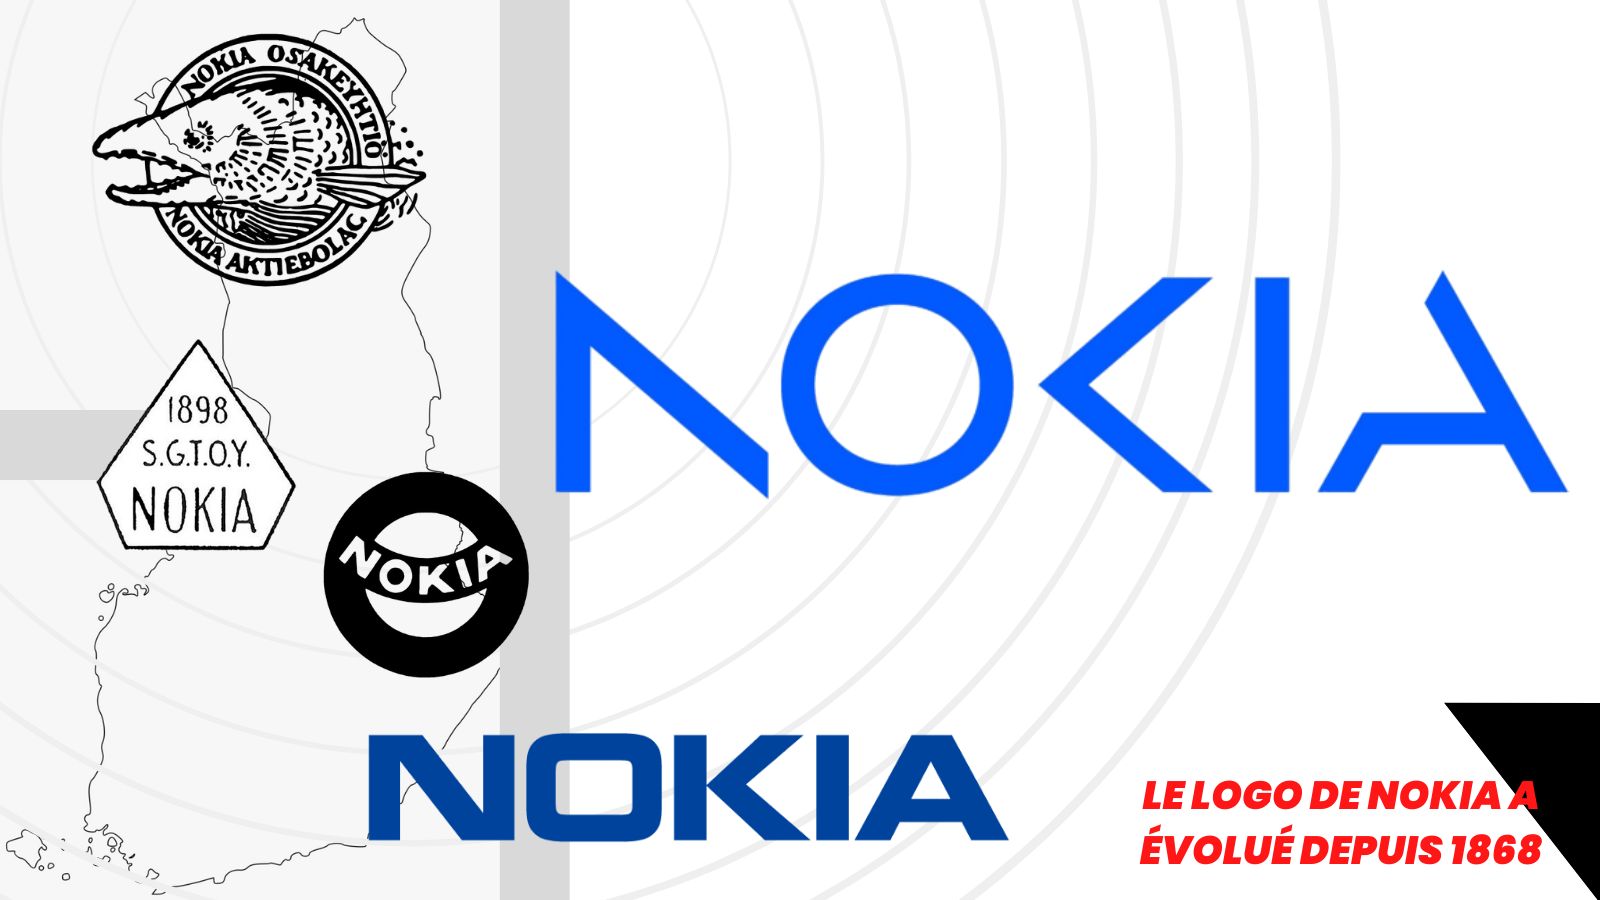 Le logo de Nokia a évolué depuis 1868